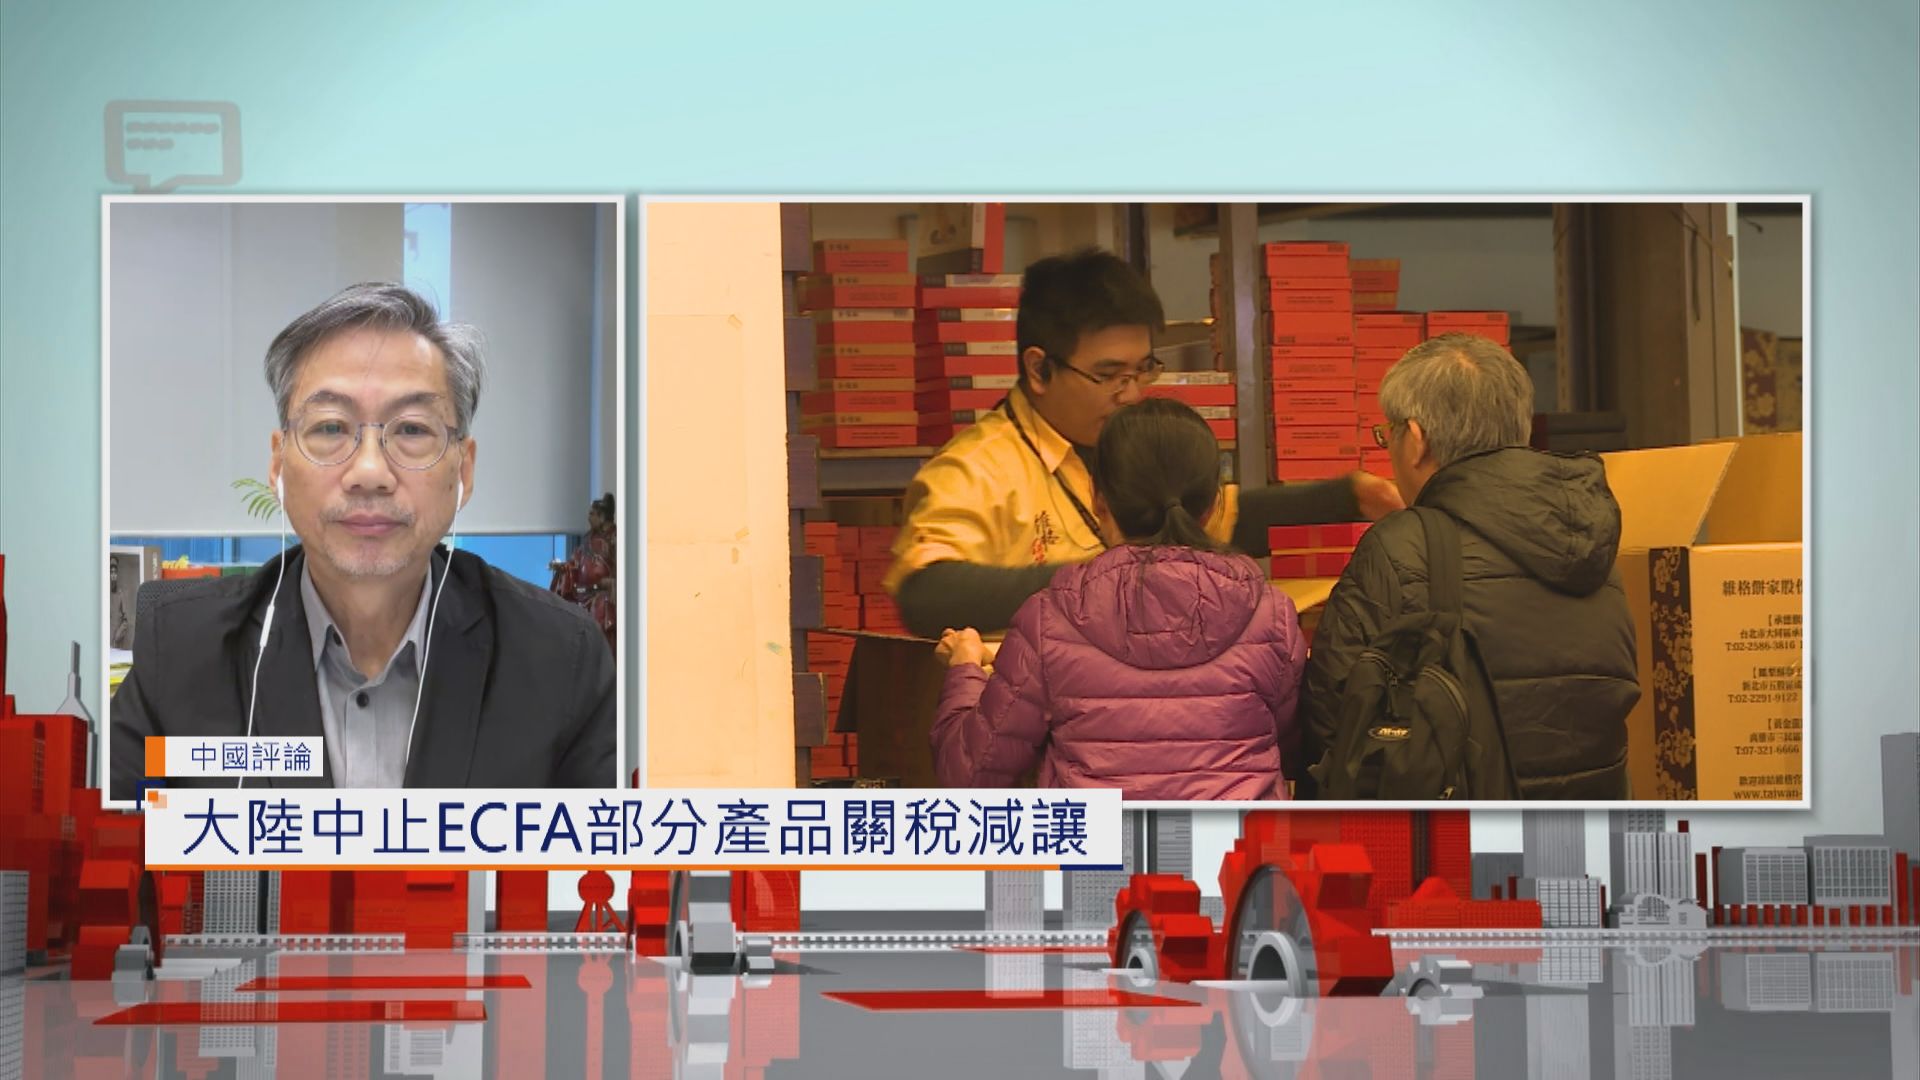 【中國評論】大陸中止ECFA部分產品關稅減讓